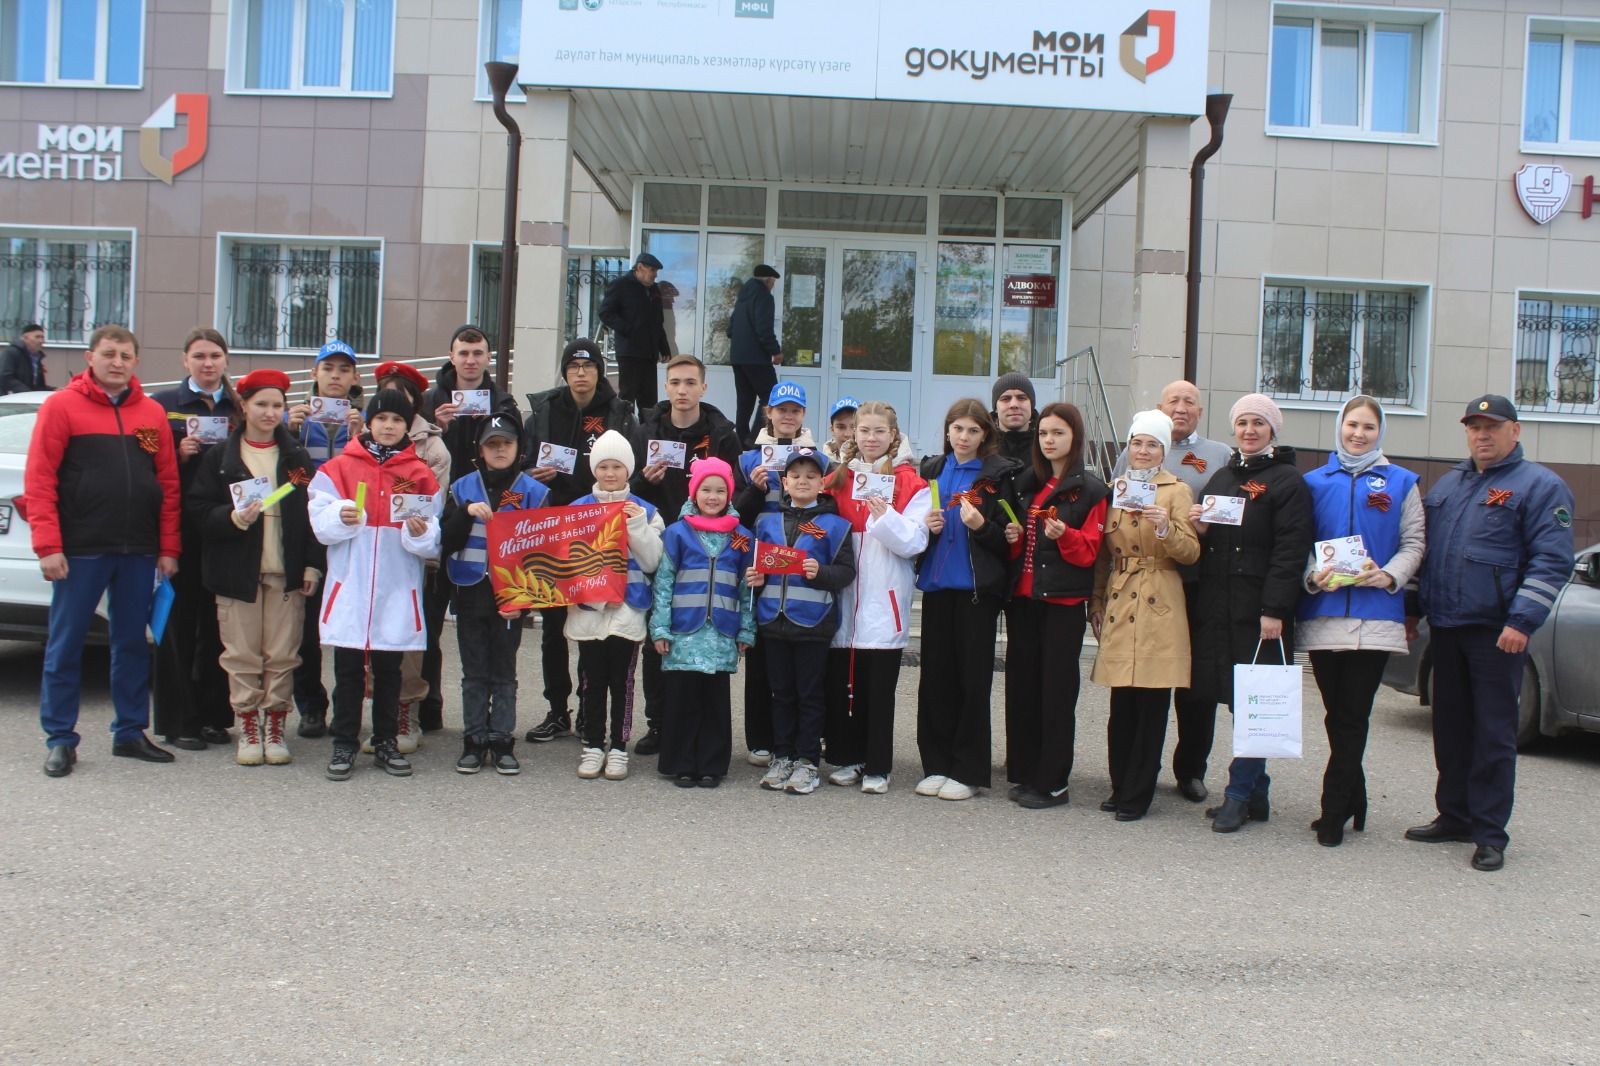 В Дрожжановском районе РТ в рамках акции раздали георгиевские ленточки к 9 мая